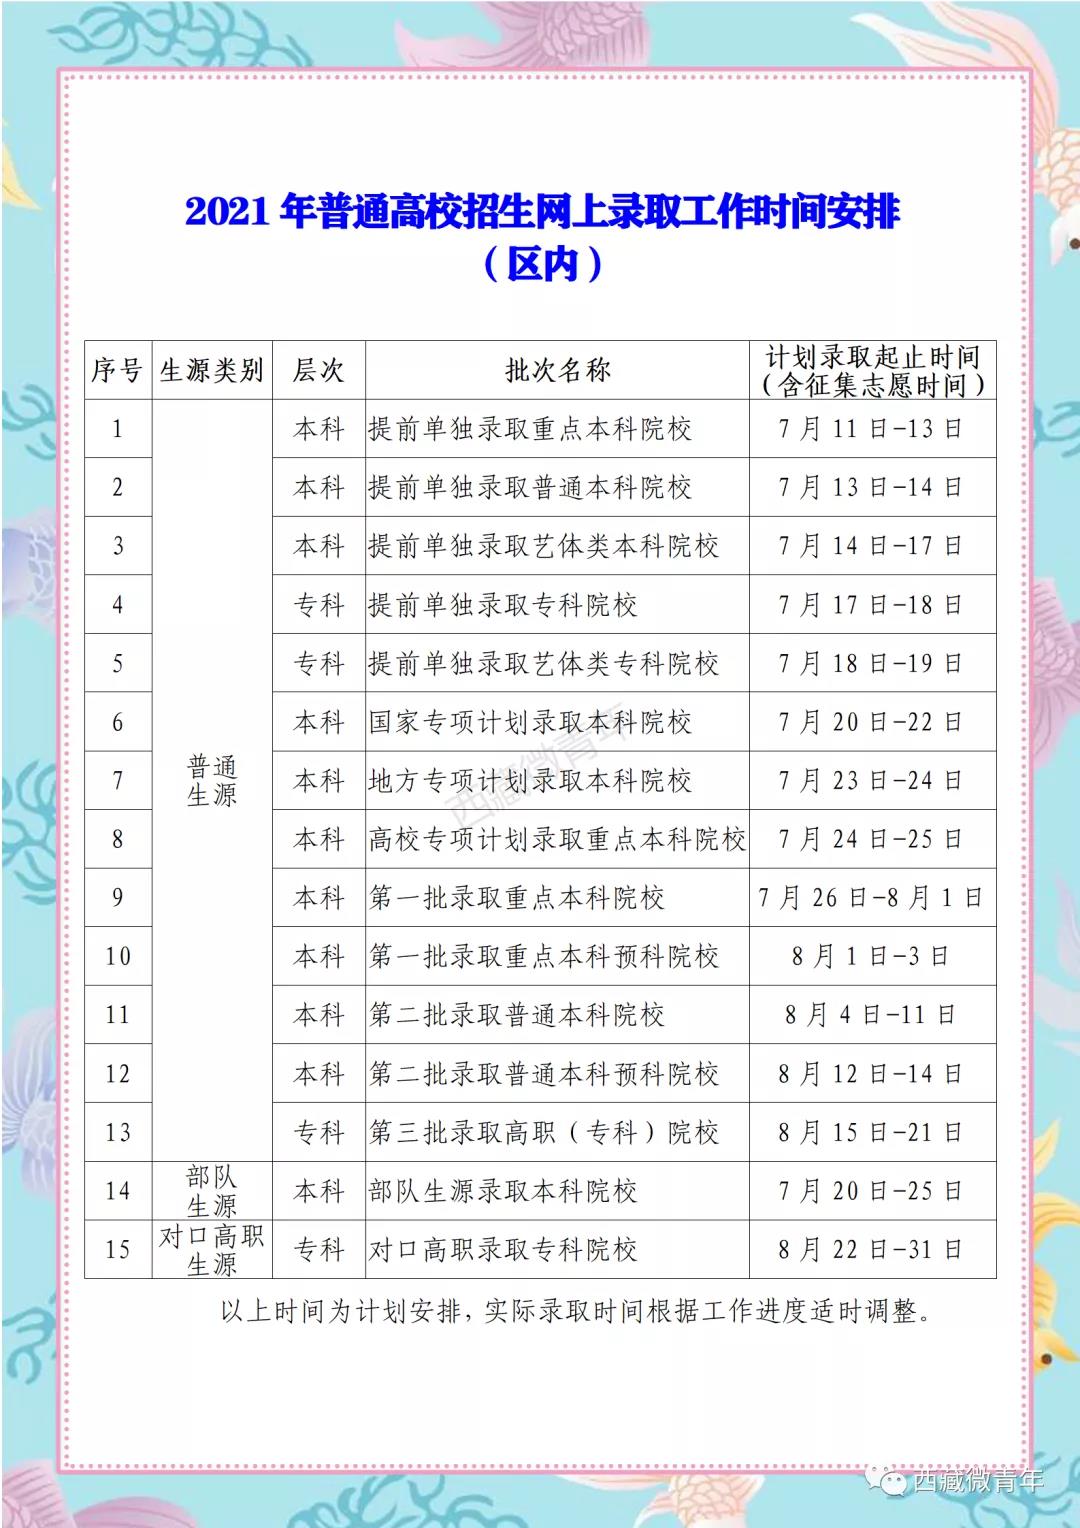 2021西藏高考艺体类志愿录取时间